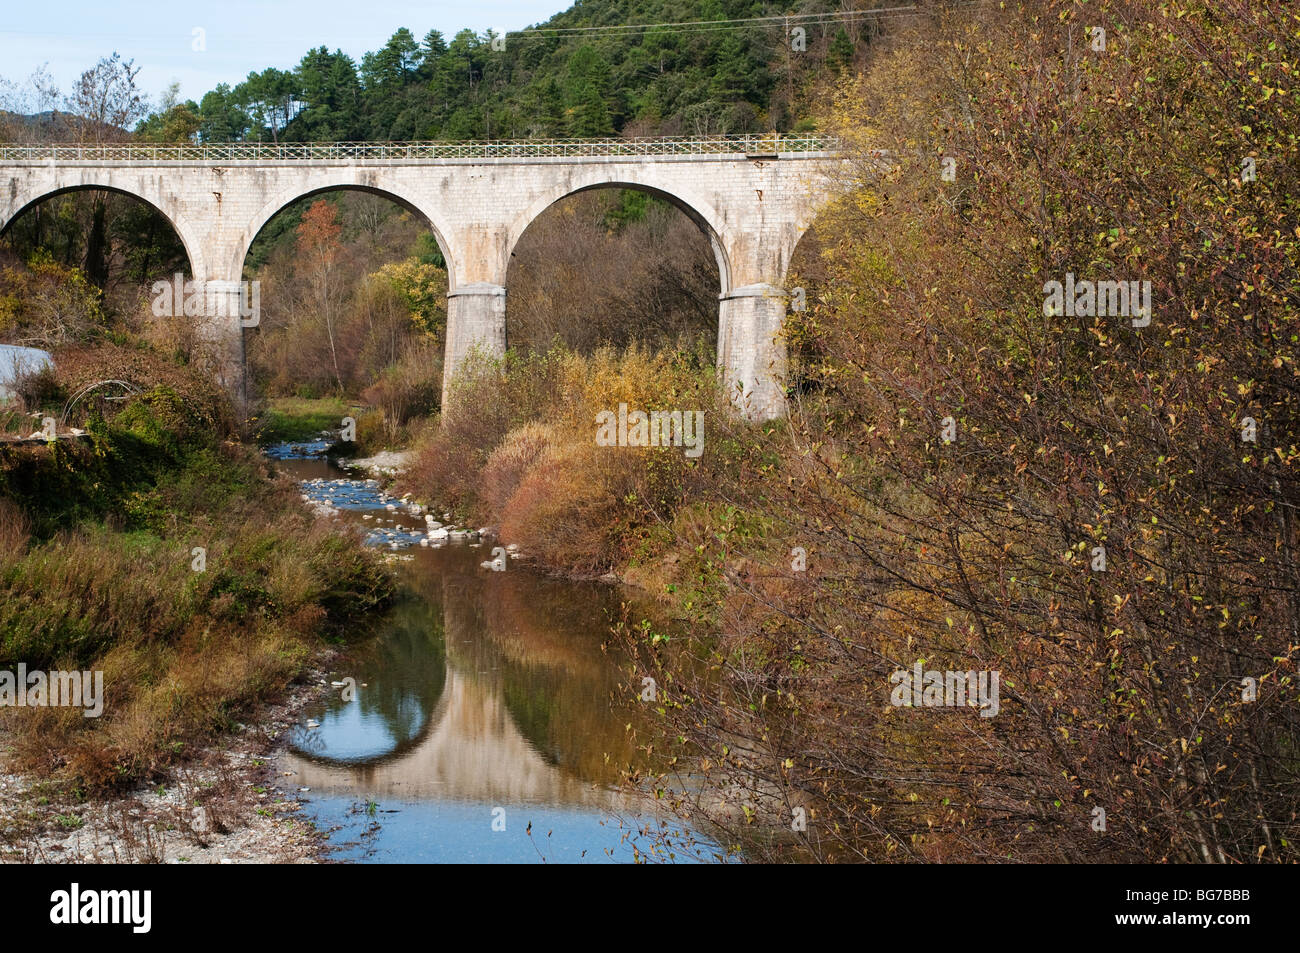 Viaduc, Sumene village, Gard, dans le sud de la France Banque D'Images